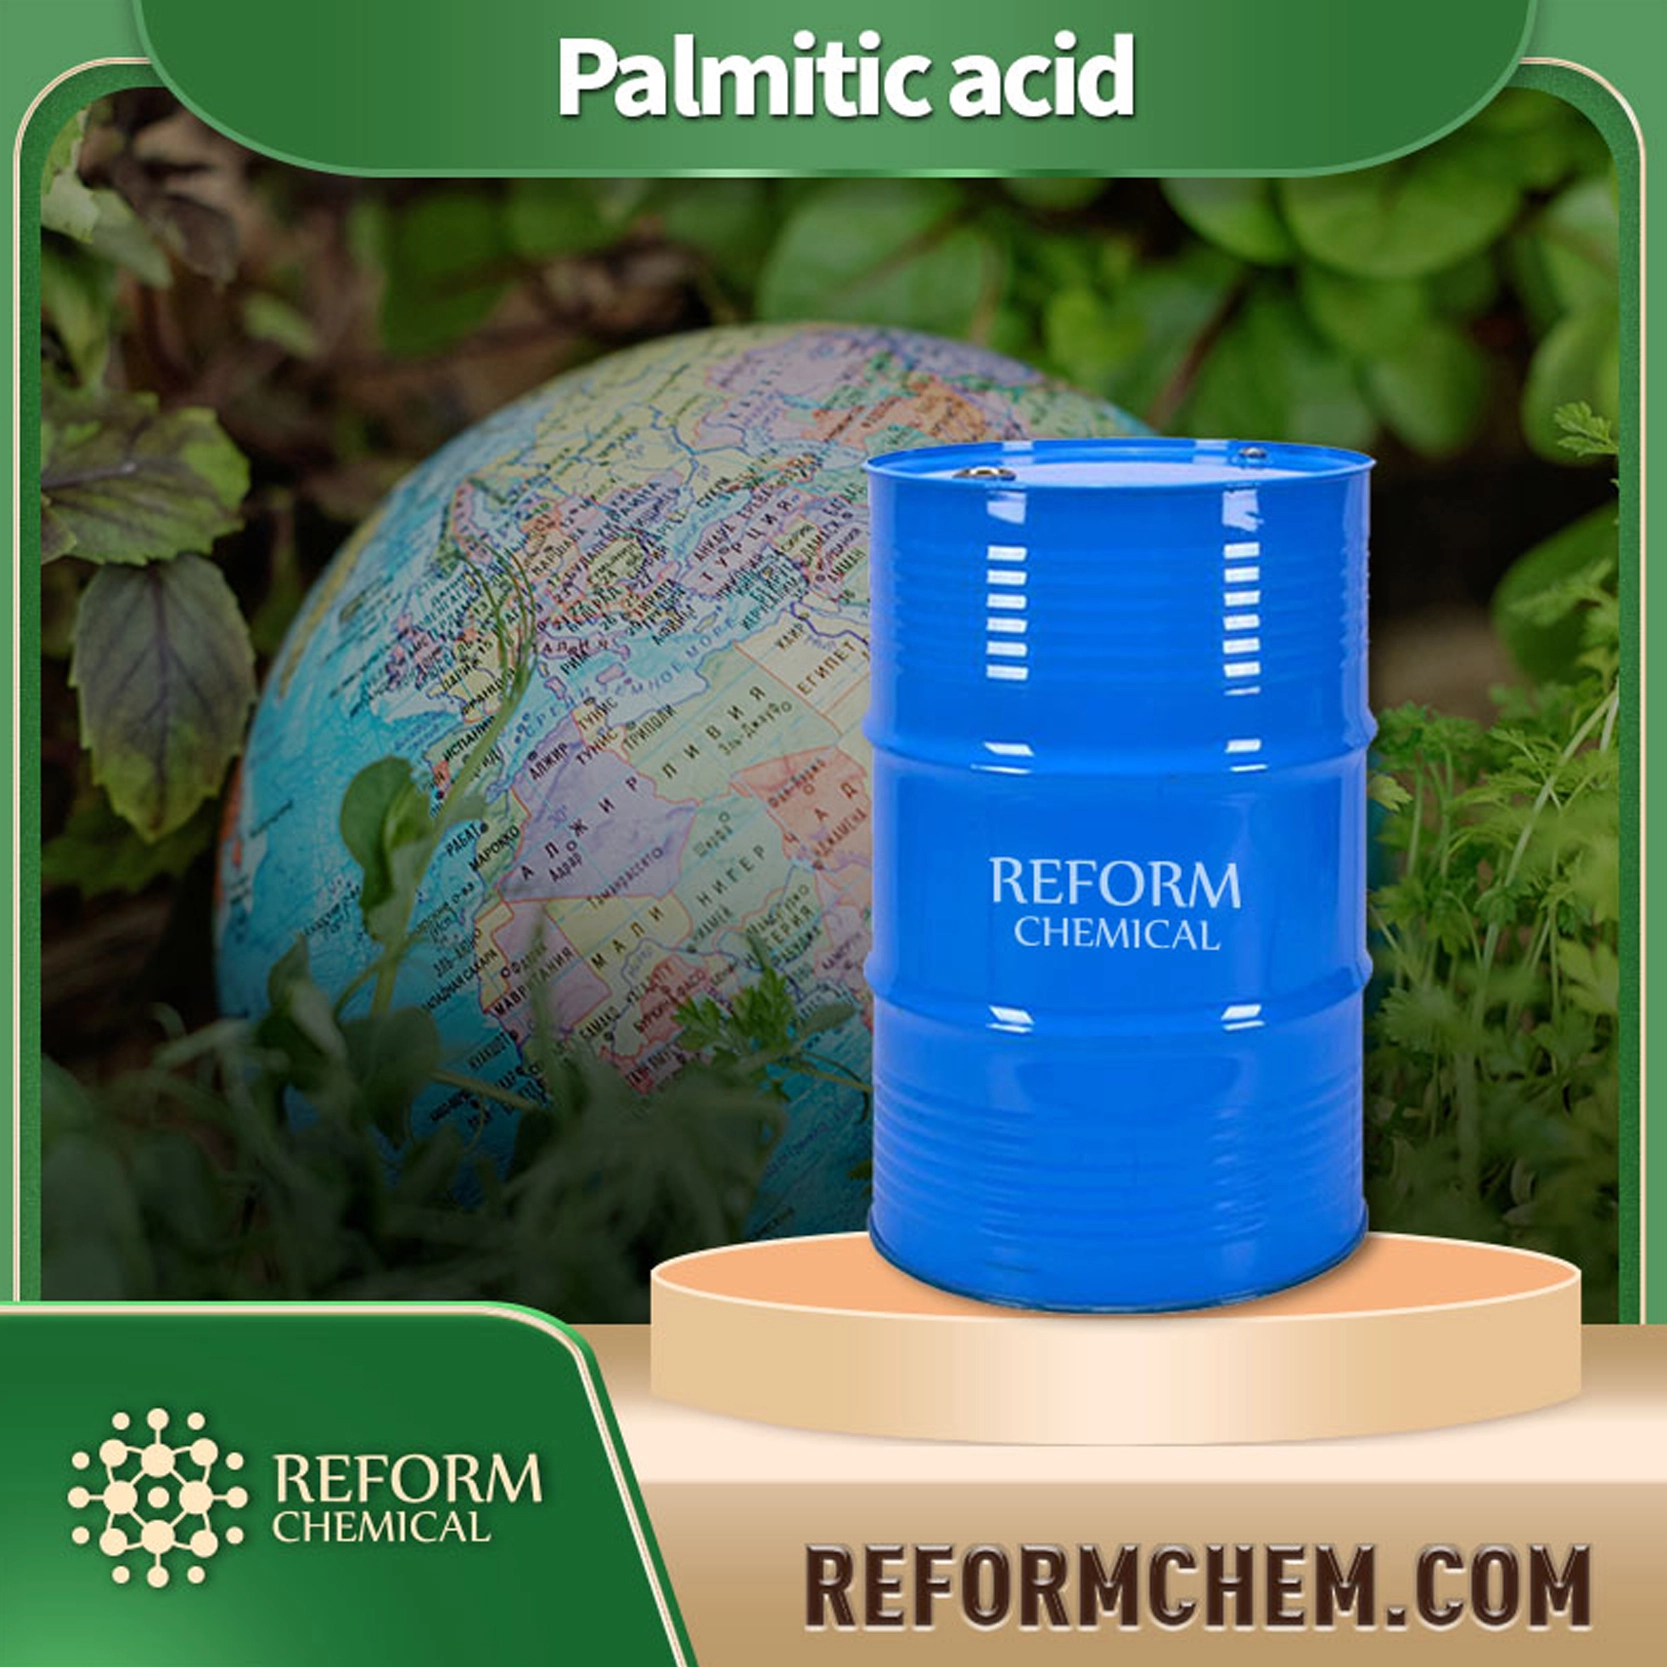 Palmitic acid